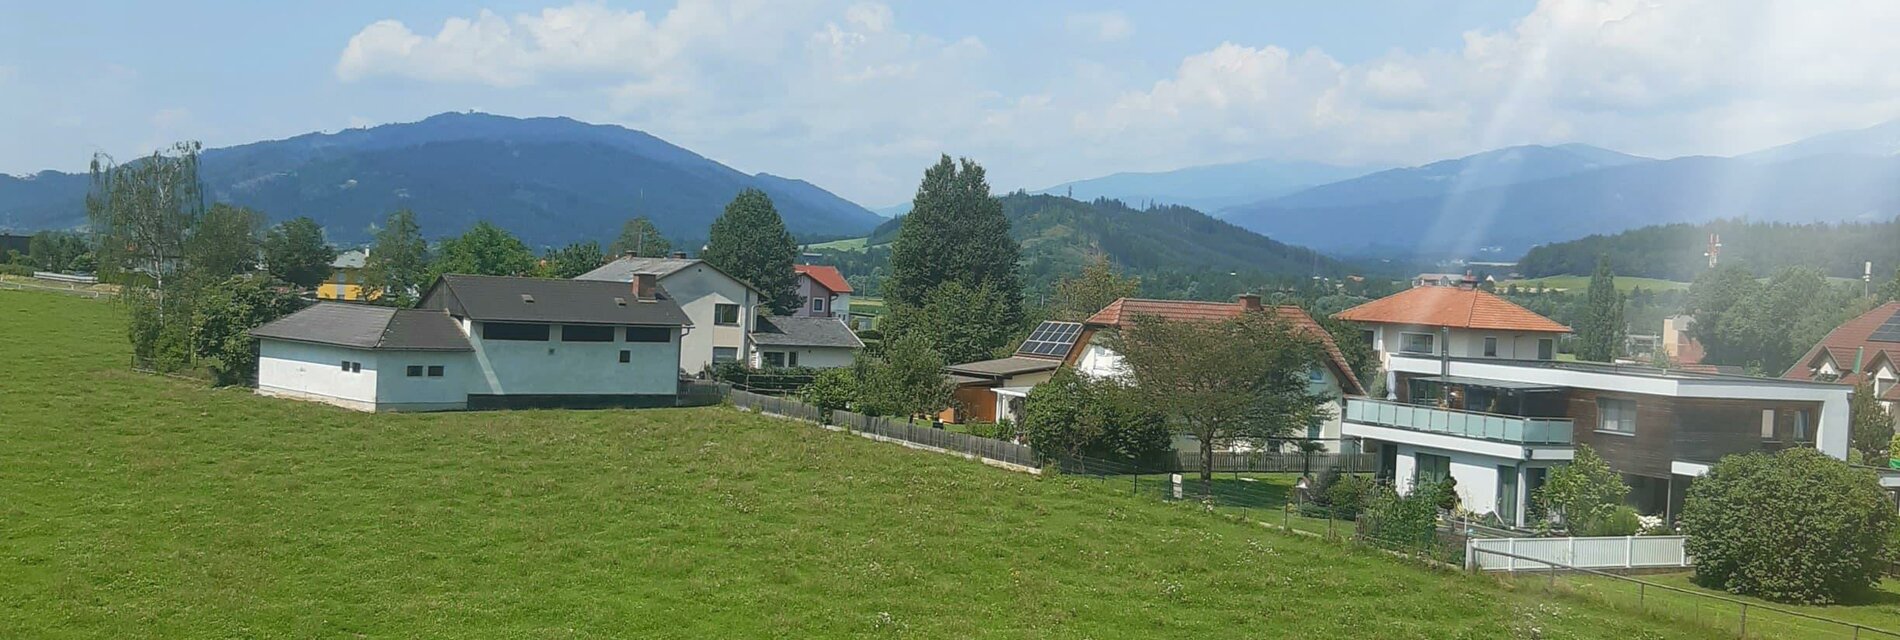 FerienwohnungGressl-Aussicht-Murtal-Steiermark